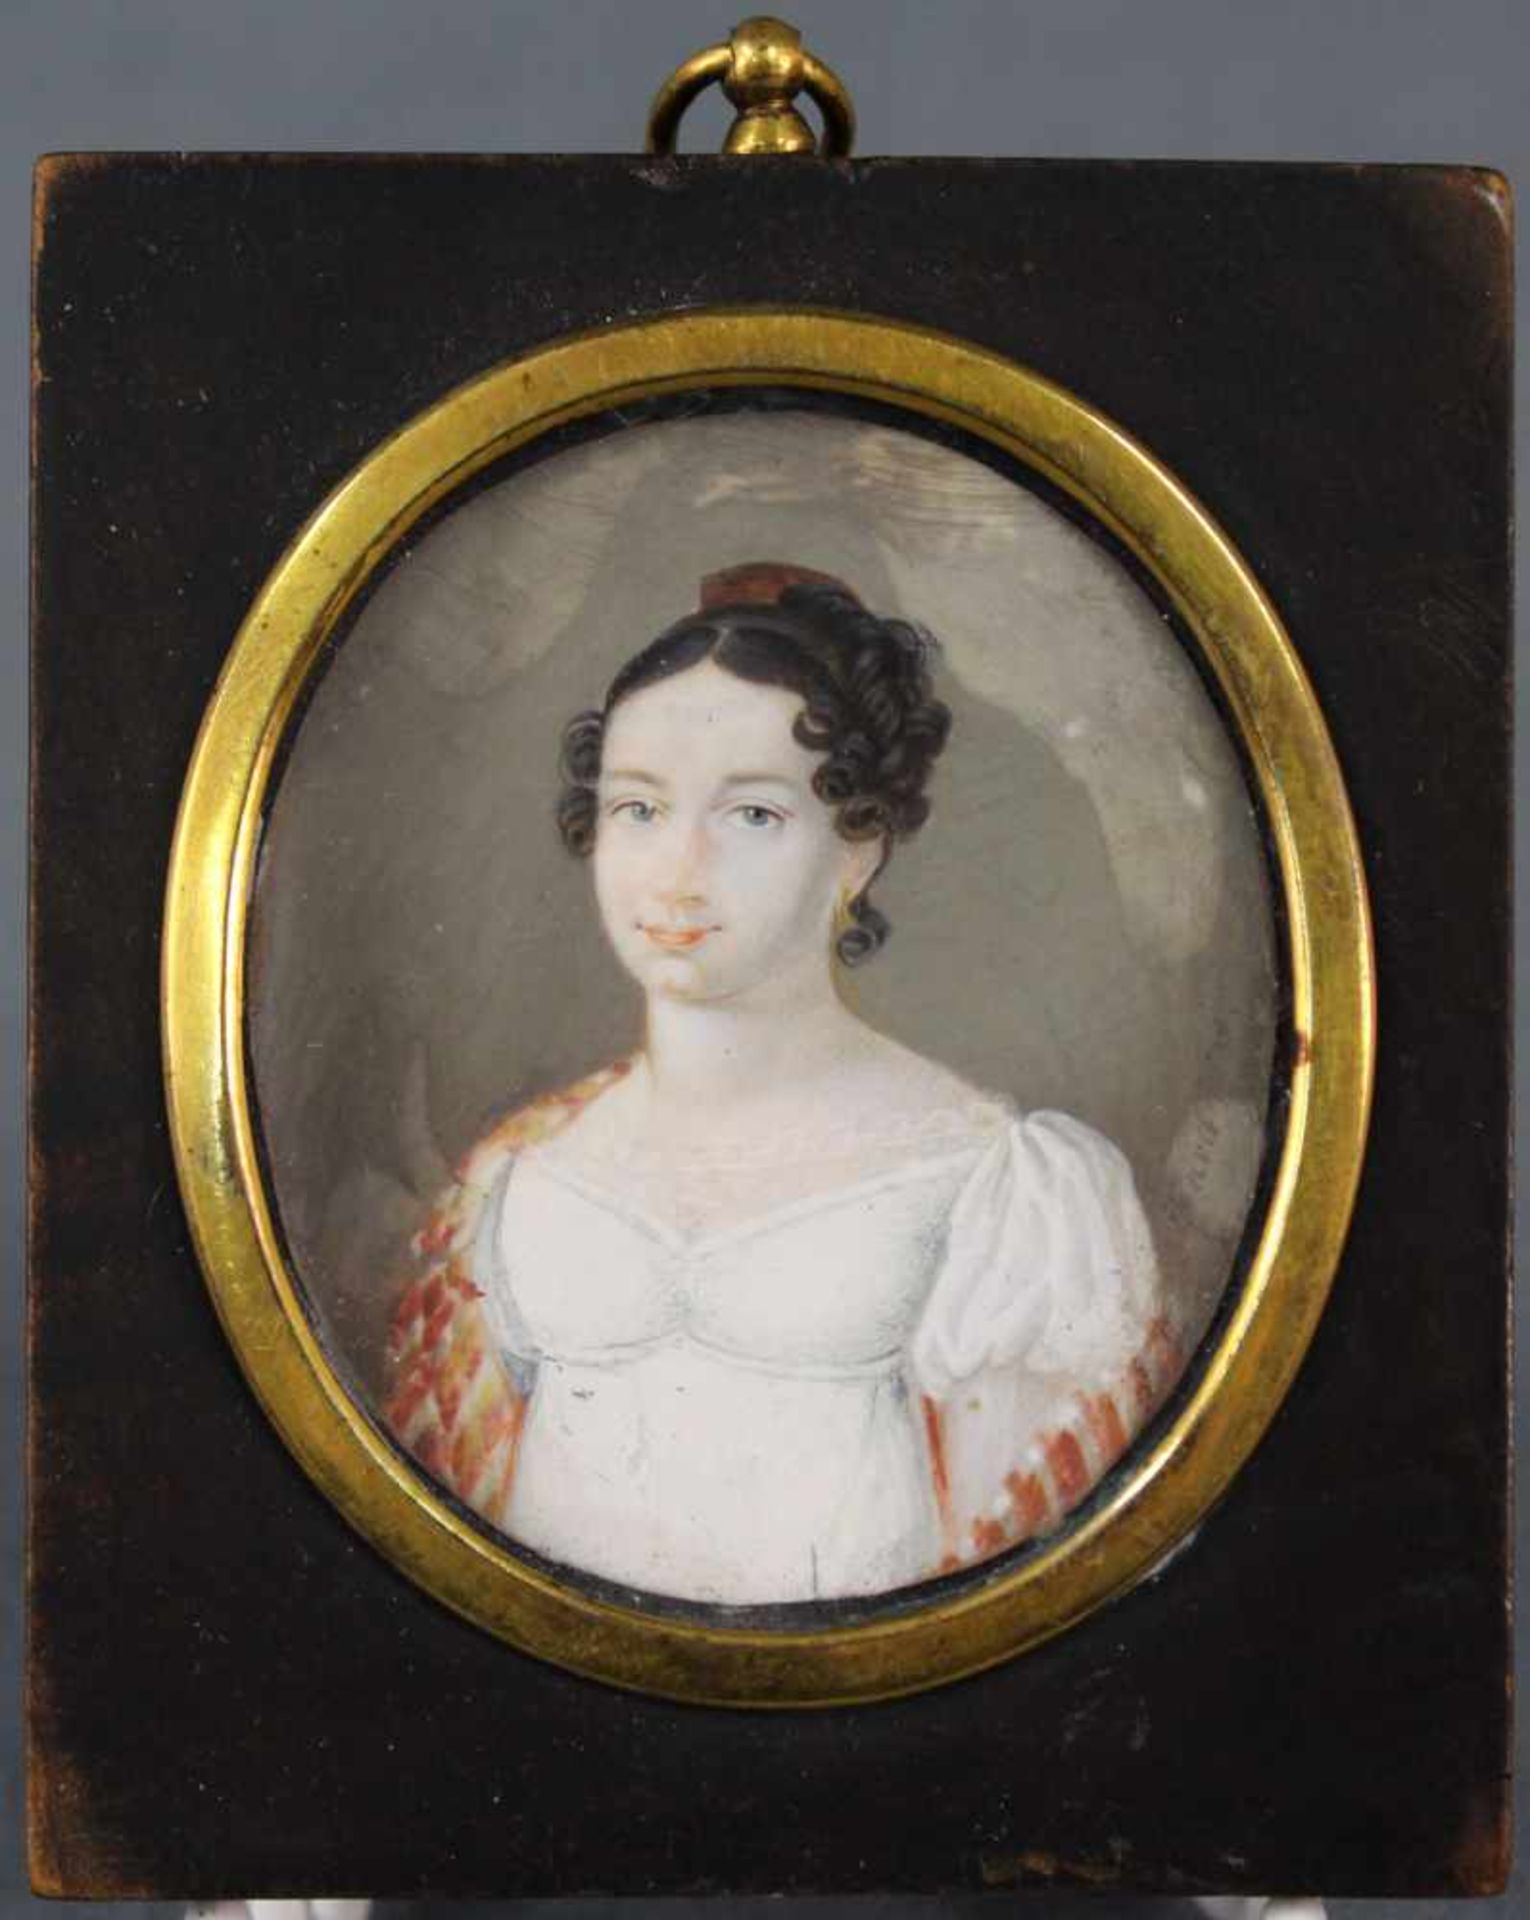 MINIATURIST (XVIII). Portrait einer Dame.64 mm x 54 mm oval. Gemälde, wohl Gouache auf Elfenbein.